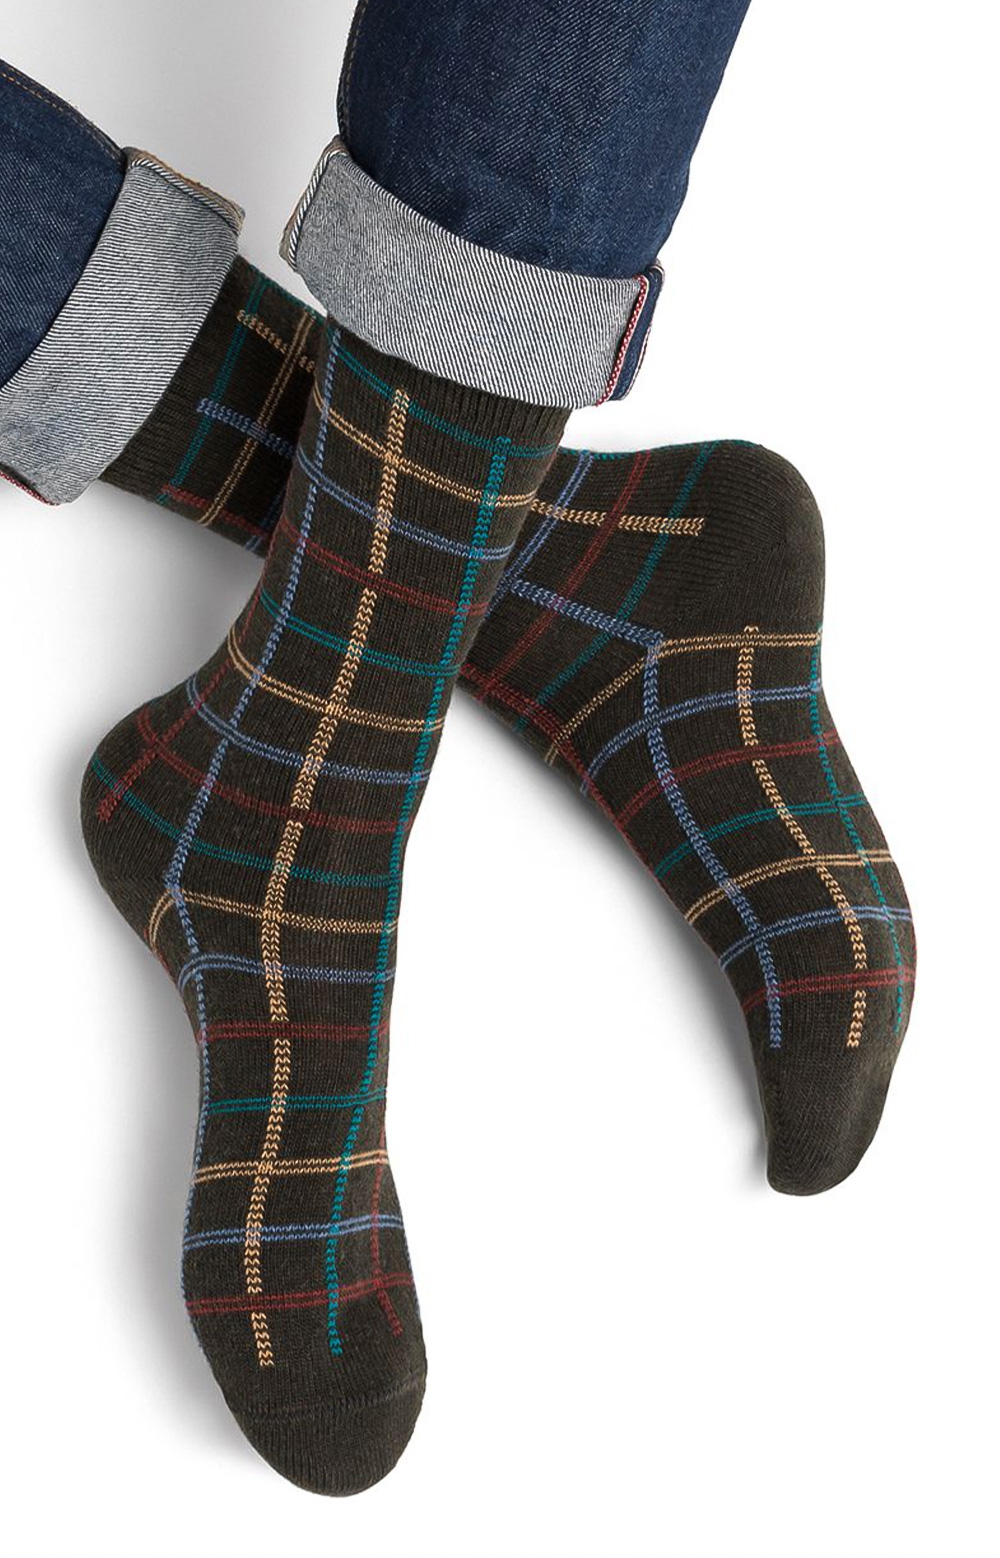 4 plis Bas chaussette en laine ; couleur 50g 407 ocean-color 